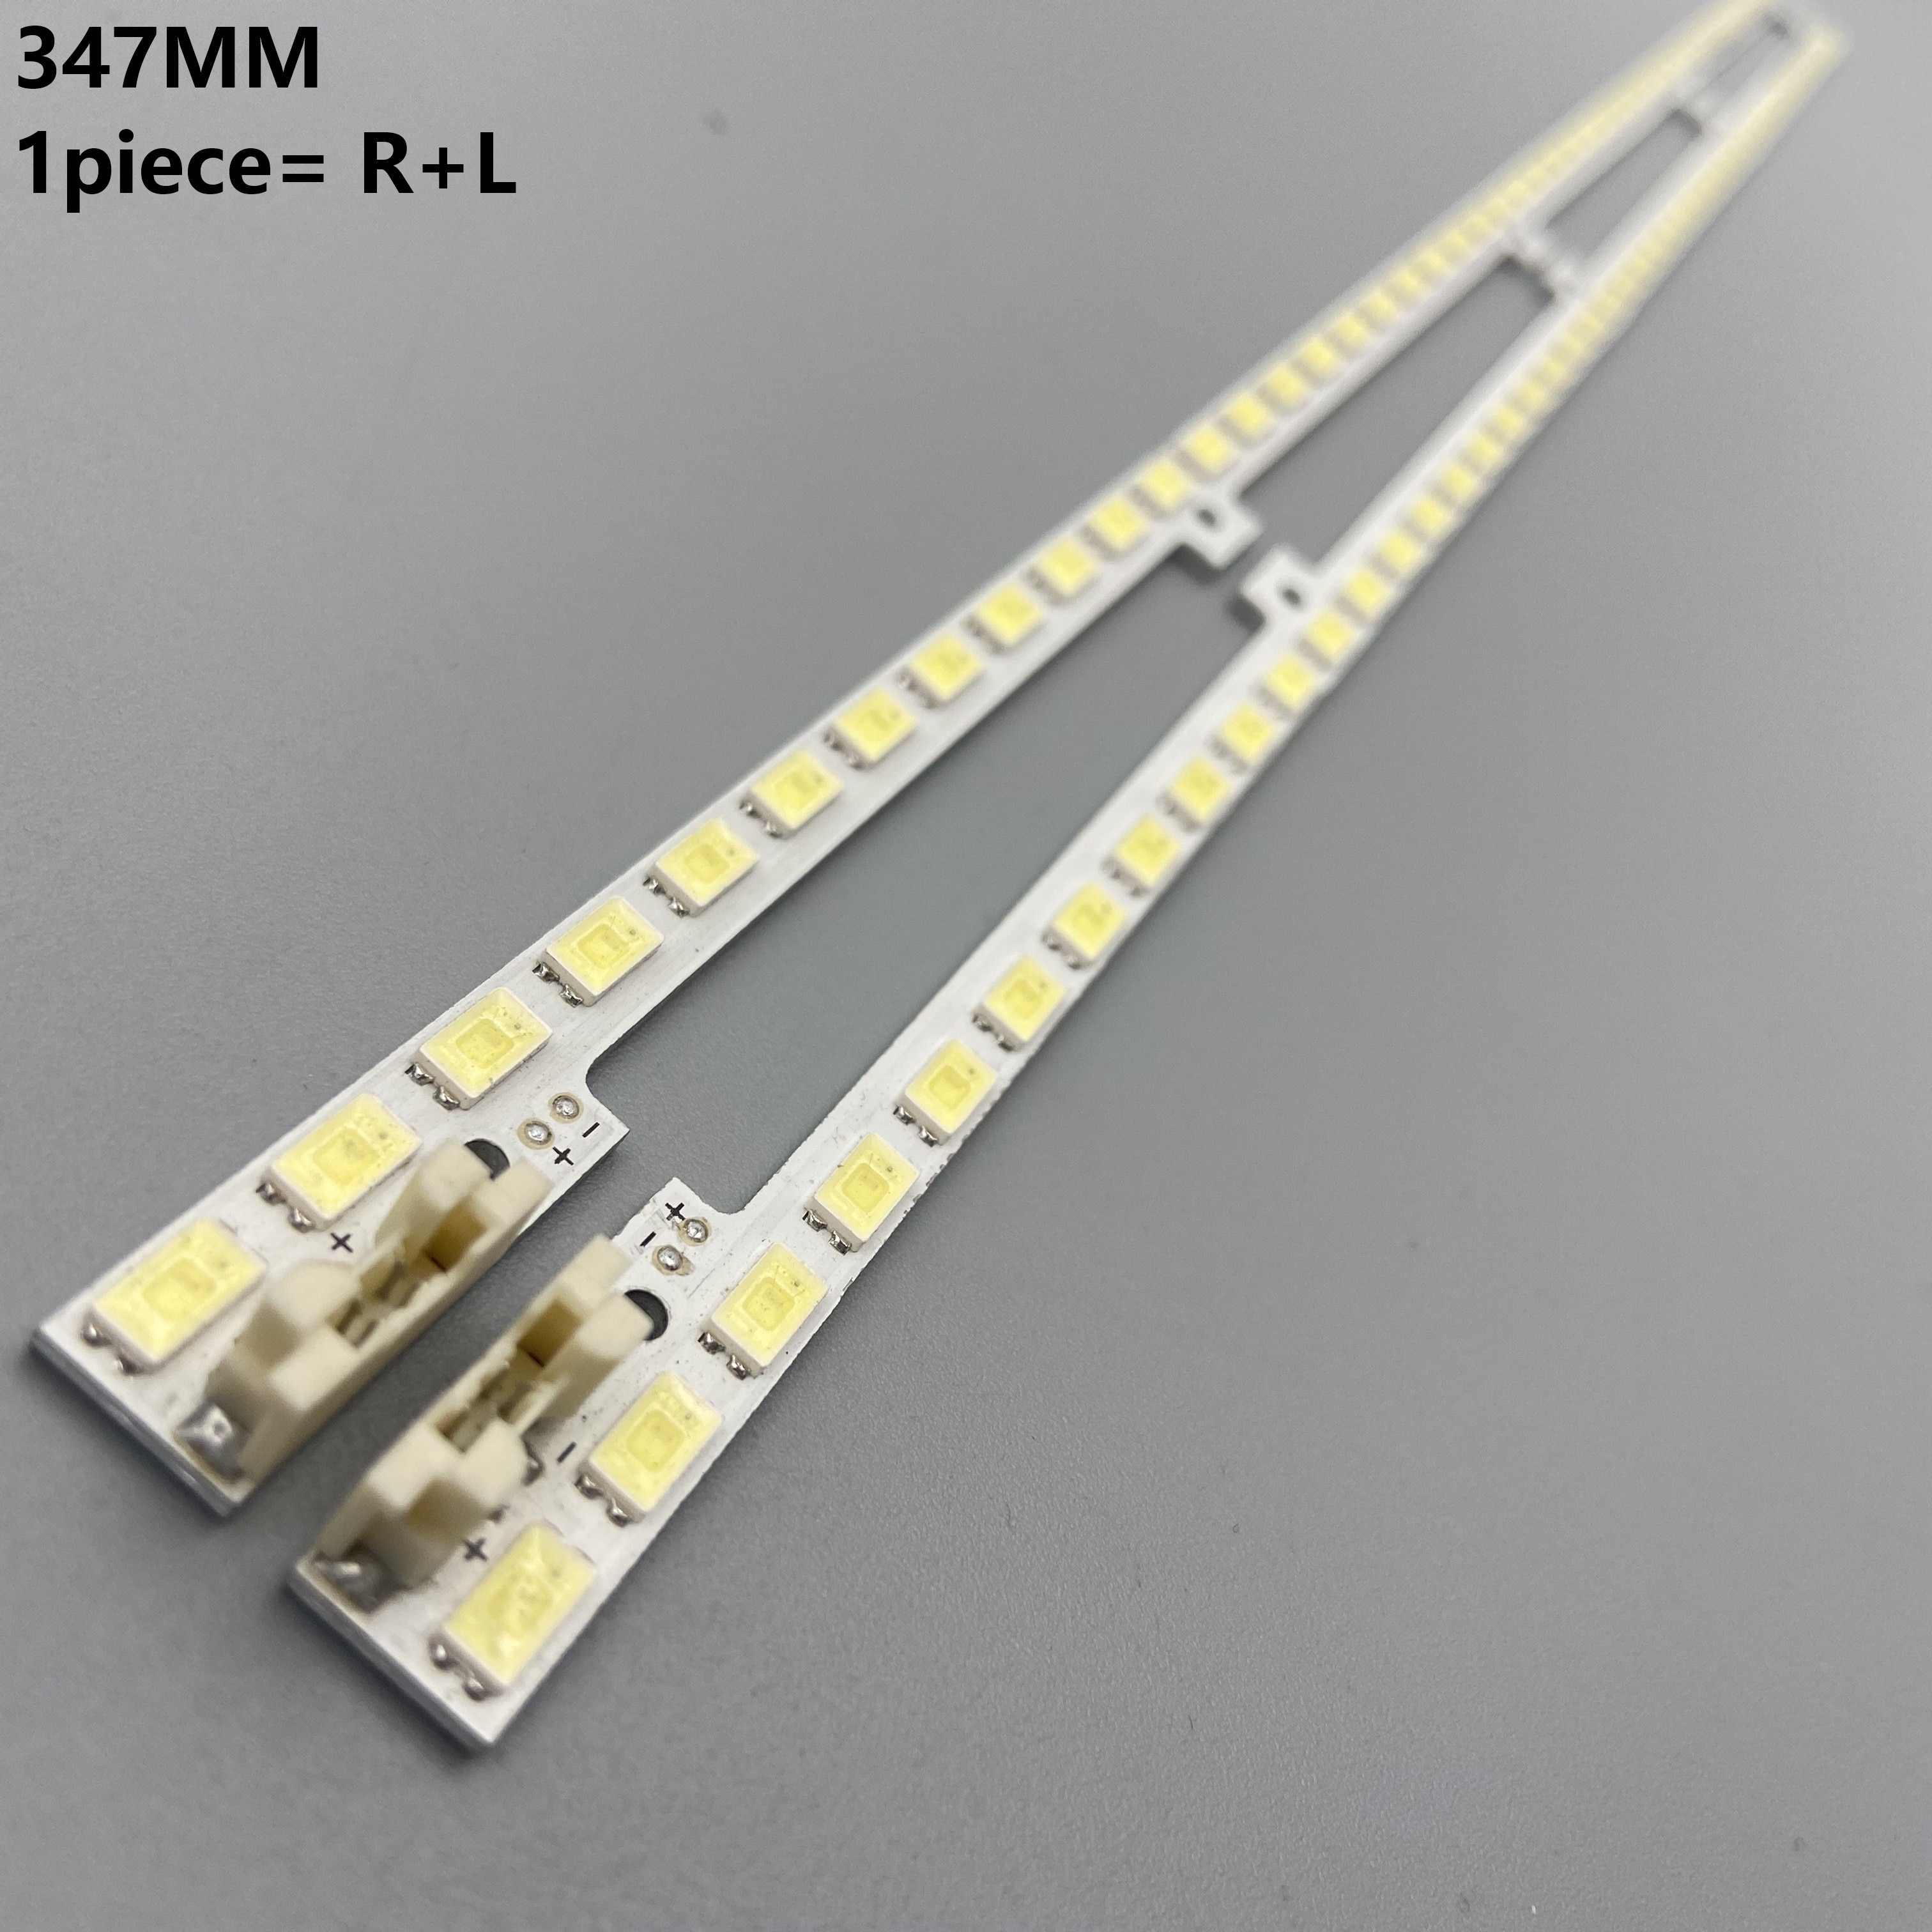 2 Stks/partij 347 Mm Led Backlight Lamp Strip 44 Leds Voor Samsung 32 Inch Tv 2011SVS32 456K H1 UA32D5000 LTJ320HN01-H BN64-01634A